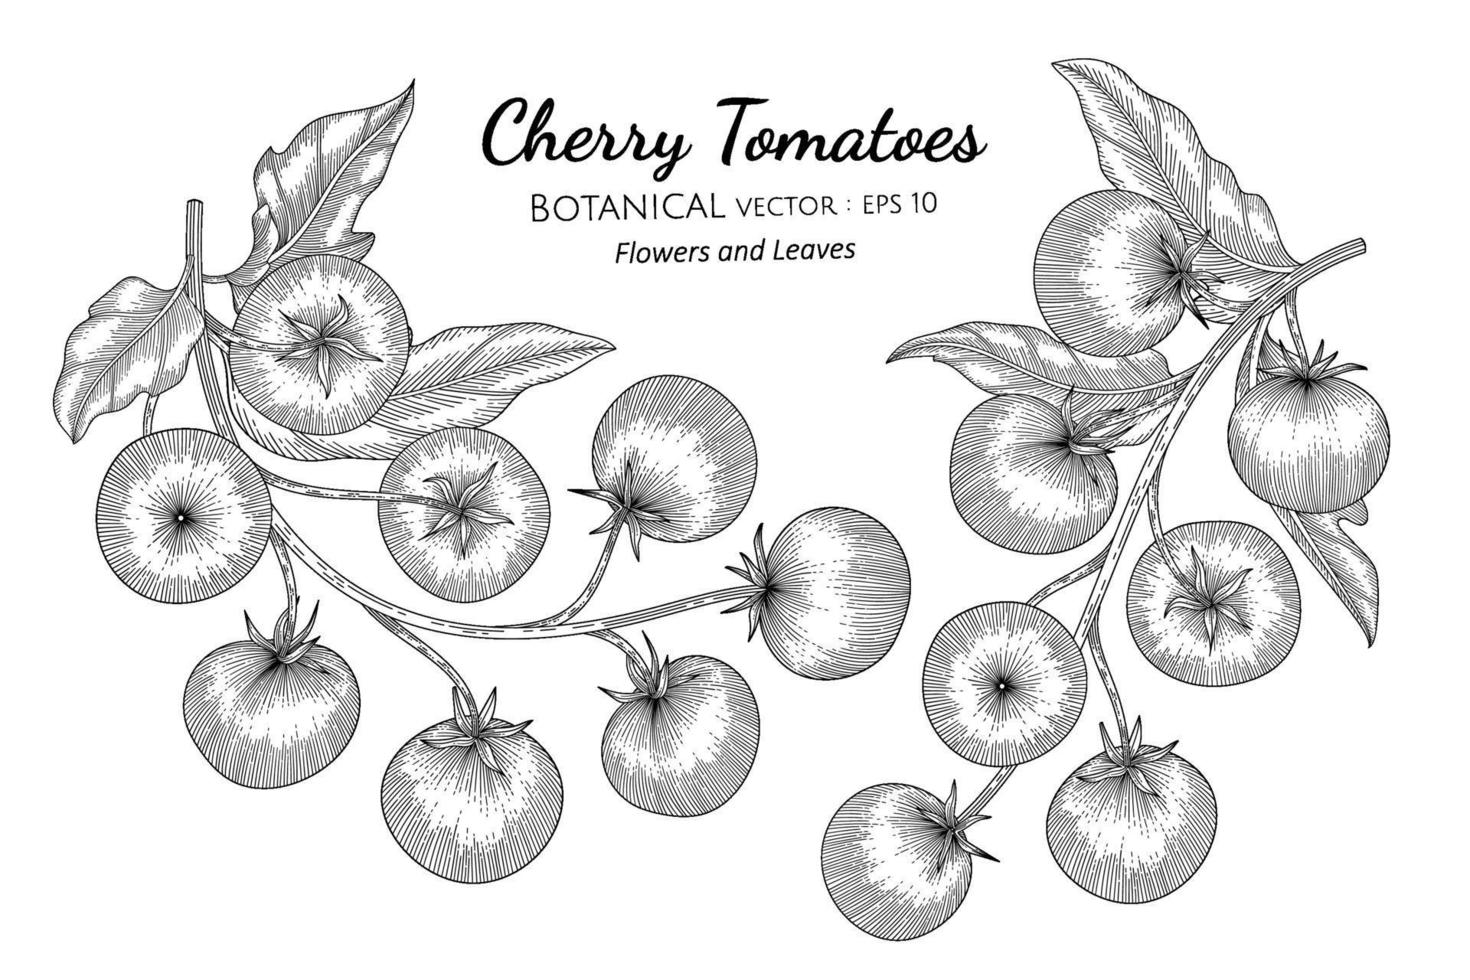 illustrazione botanica disegnata a mano di pomodoro ciliegino con disegni al tratto su sfondi bianchi. vettore